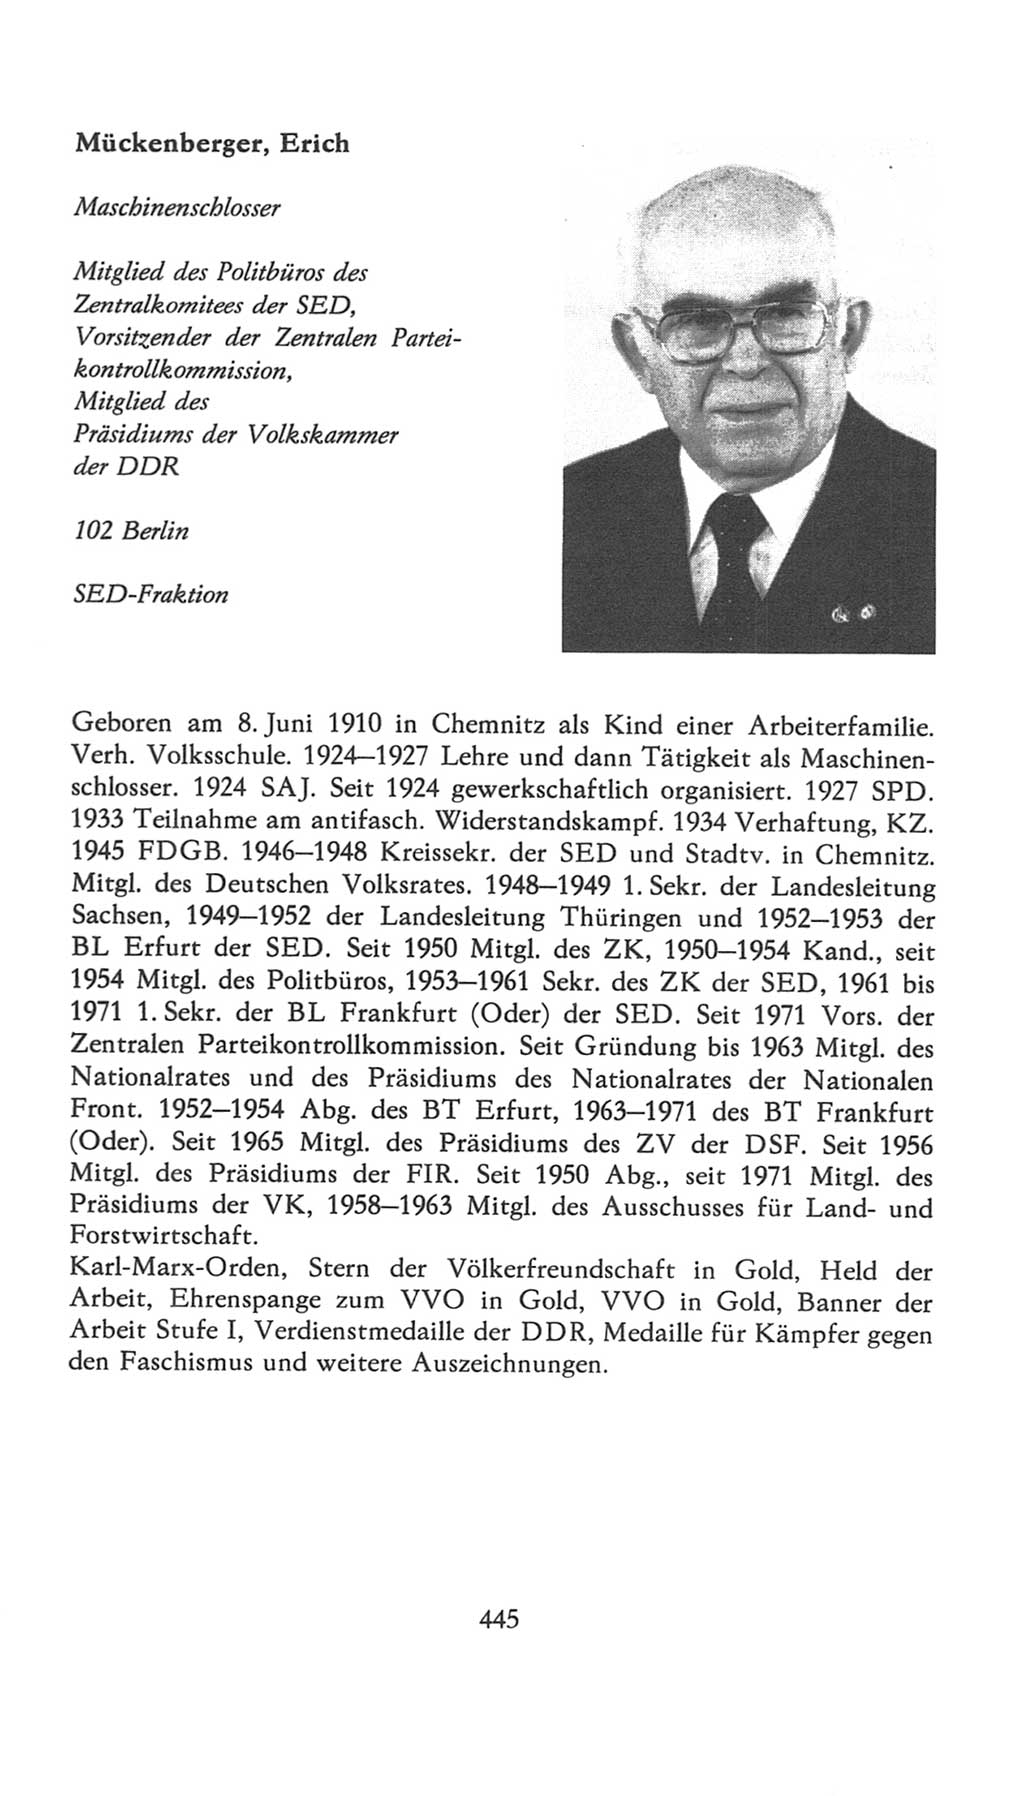 Volkskammer (VK) der Deutschen Demokratischen Republik (DDR), 7. Wahlperiode 1976-1981, Seite 445 (VK. DDR 7. WP. 1976-1981, S. 445)